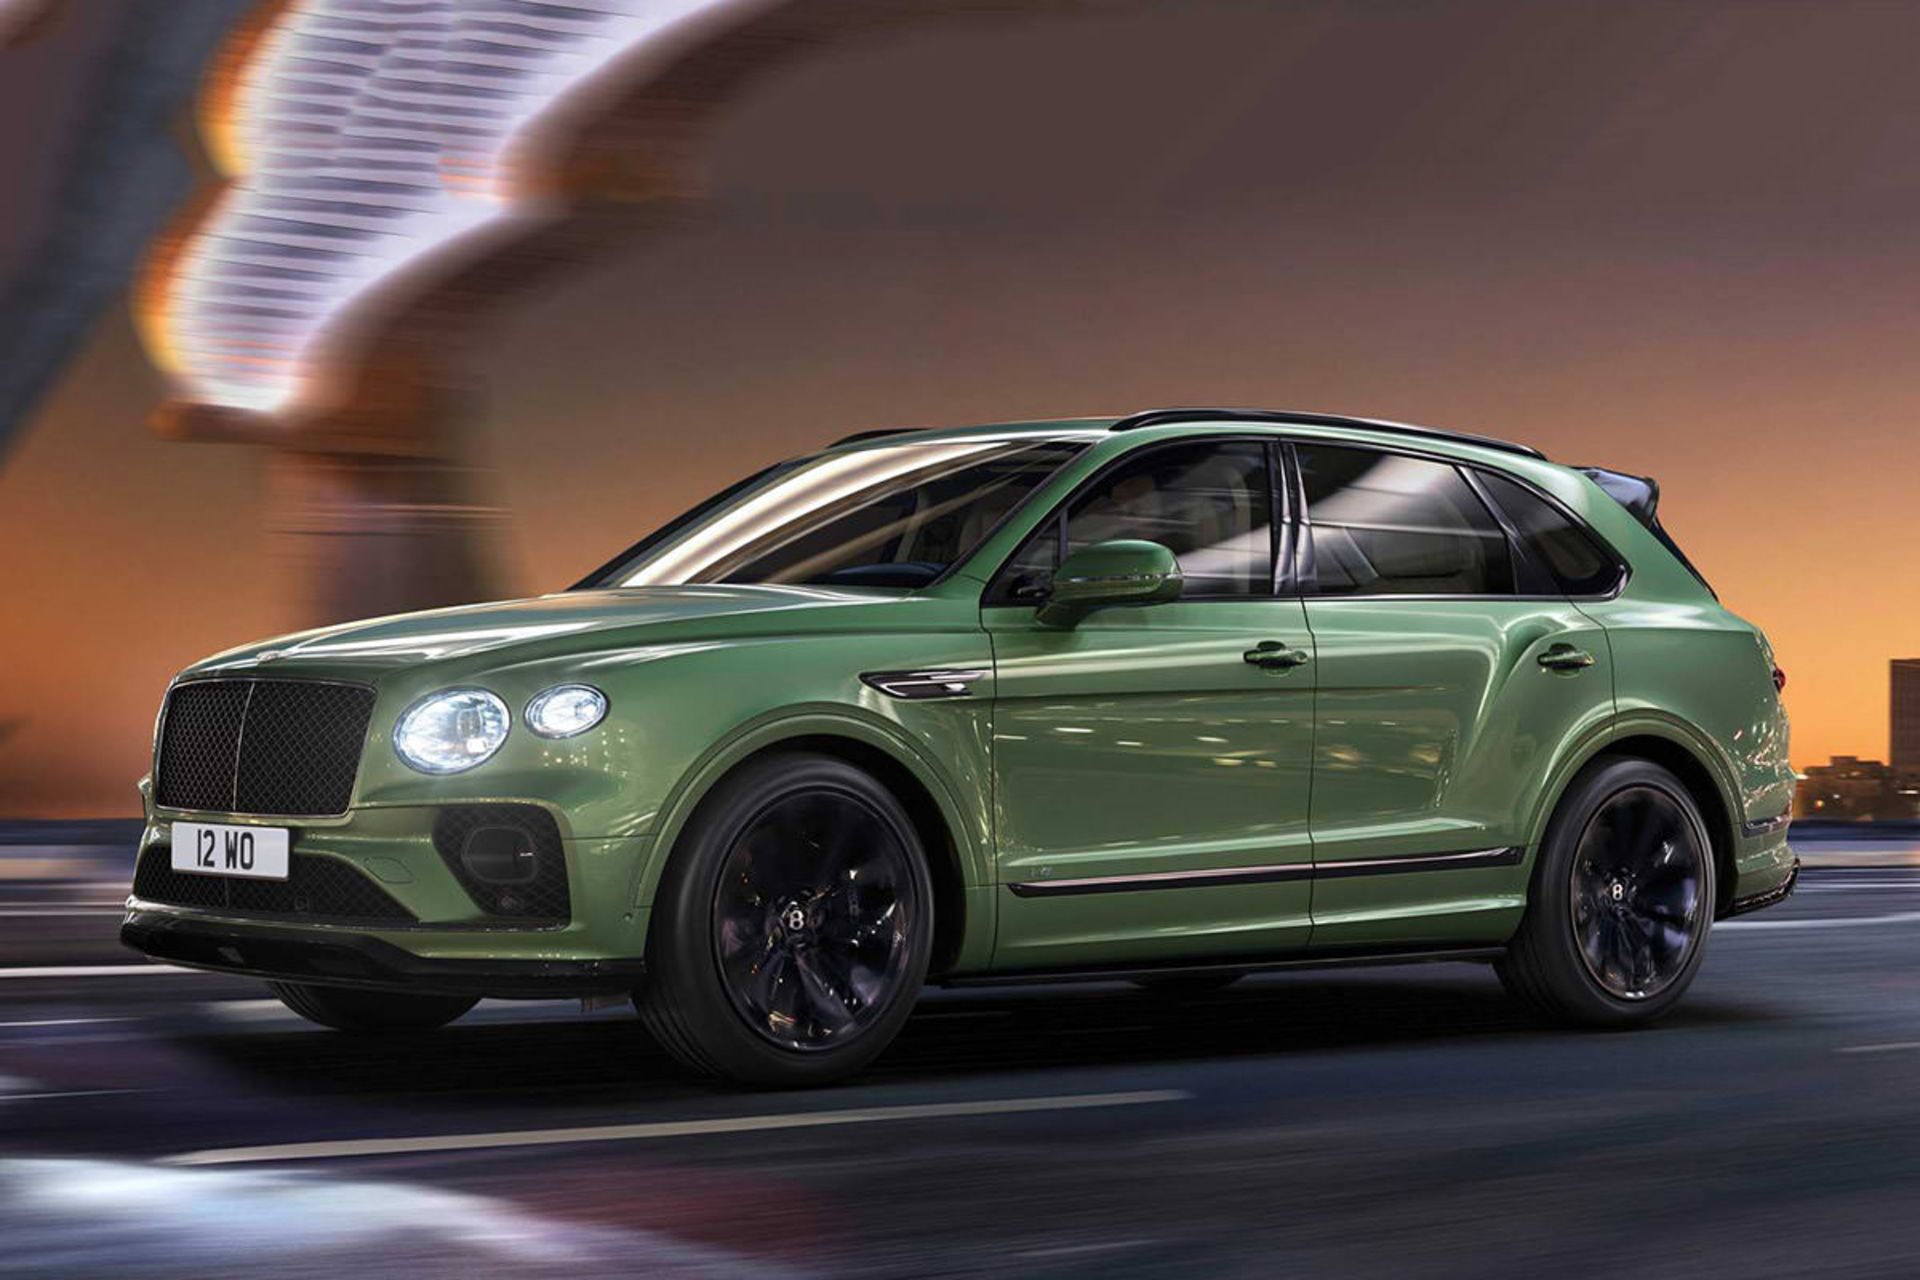 مرجع متخصصين ايران خودرو شاسي بلند / suv بنتلي بنتايگا / Bentley Bentayga با رنگ سبز